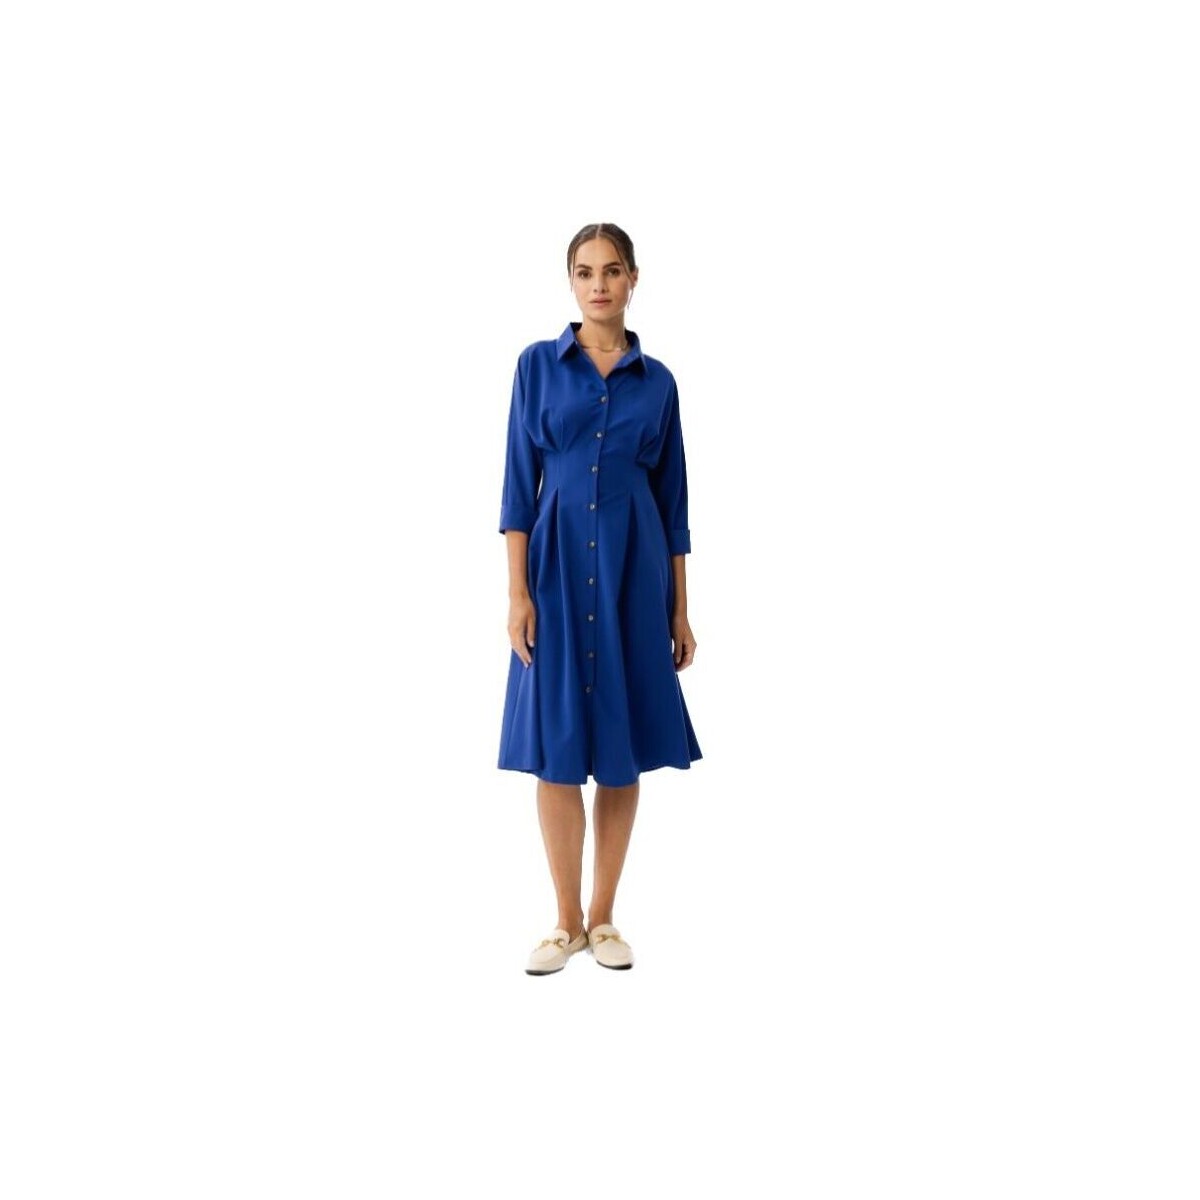 Textil Ženy Krátké šaty Stylove Dámské košilové šaty Camedes S351 chrpově modrá Tmavě modrá